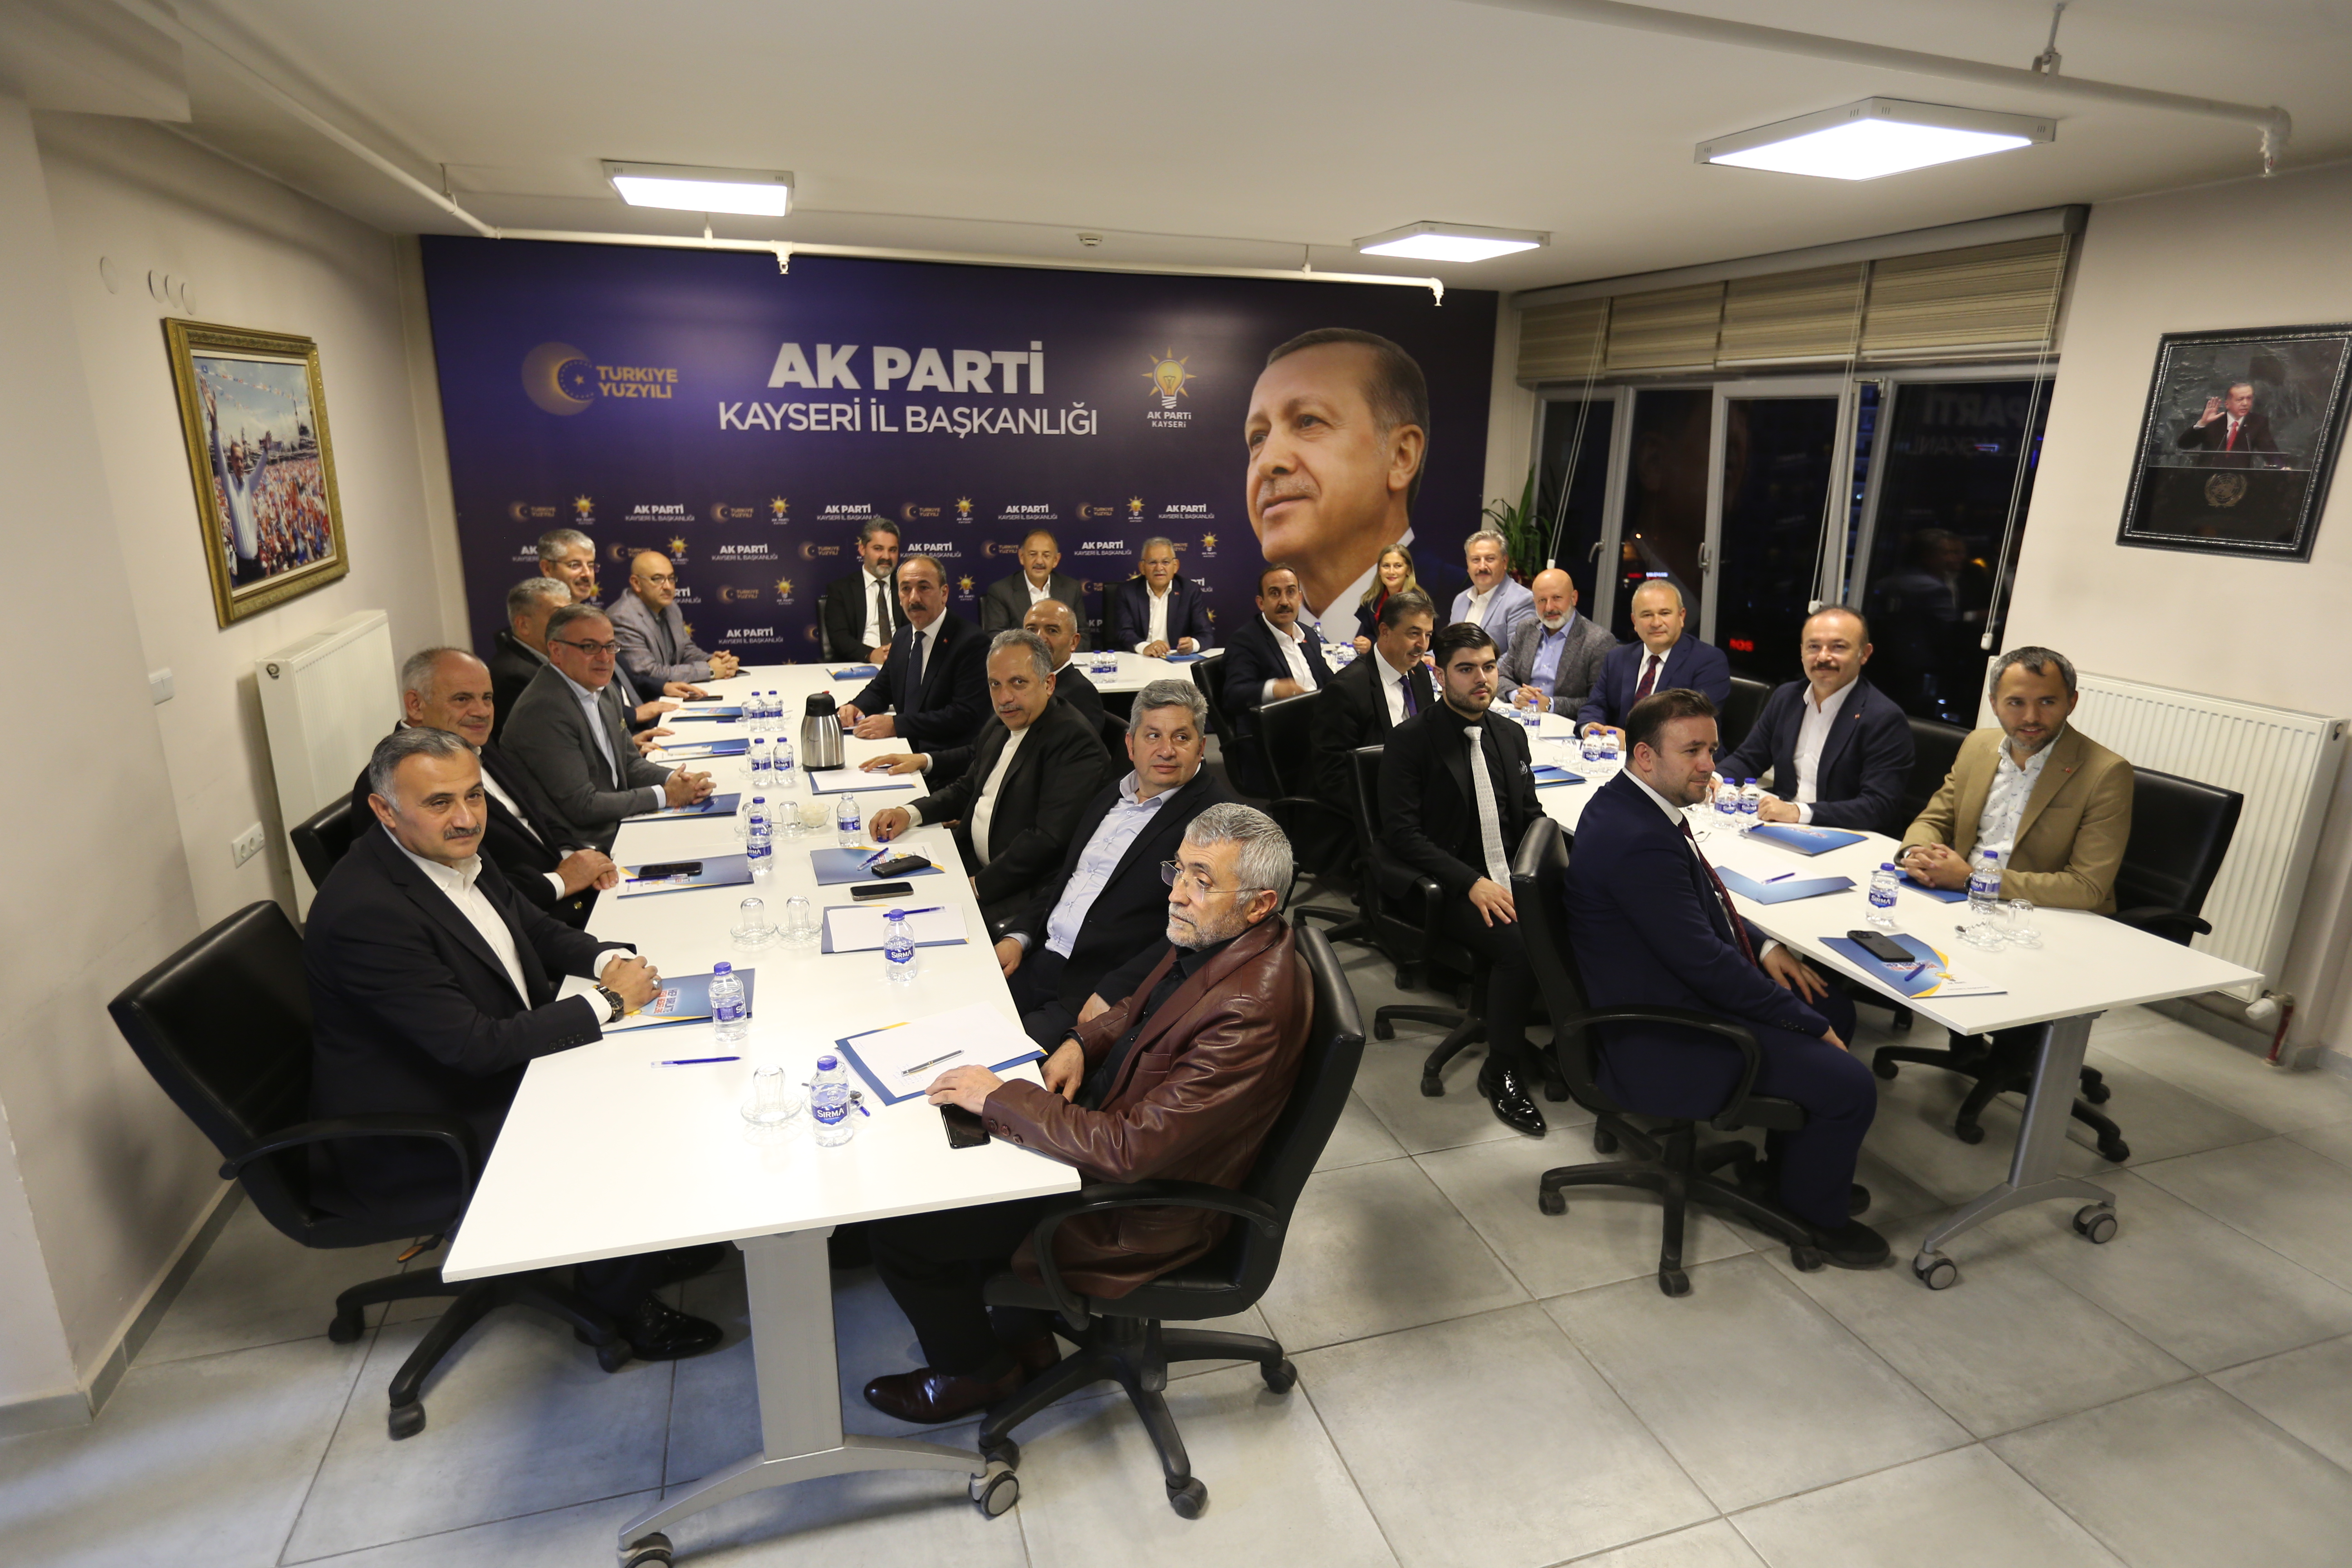 Kayseri’de AK Parti Kayseri İl Başkanlığı İstişare Toplantısı gerçekleştirildi